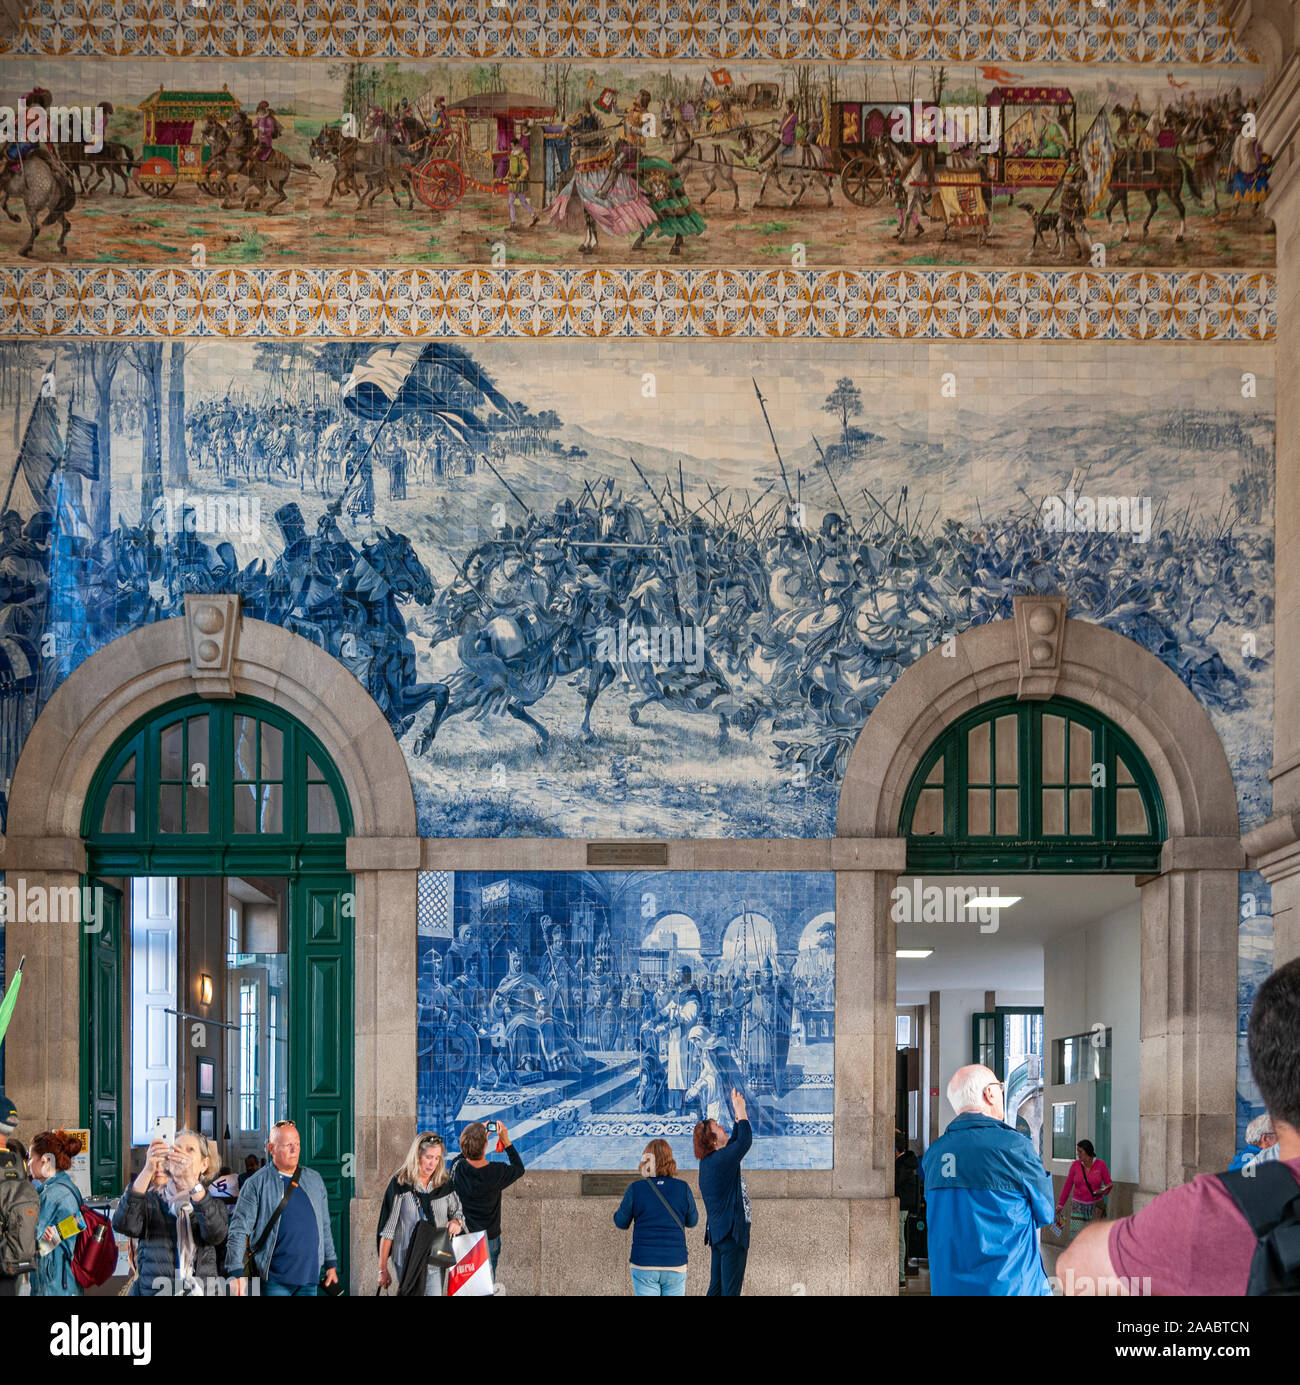 Ceramiche dipinte tileworks (azulejos) sulle pareti interne della sala principale di alla Stazione Ferroviaria di Sao Bento a Porto, Portogallo Foto Stock